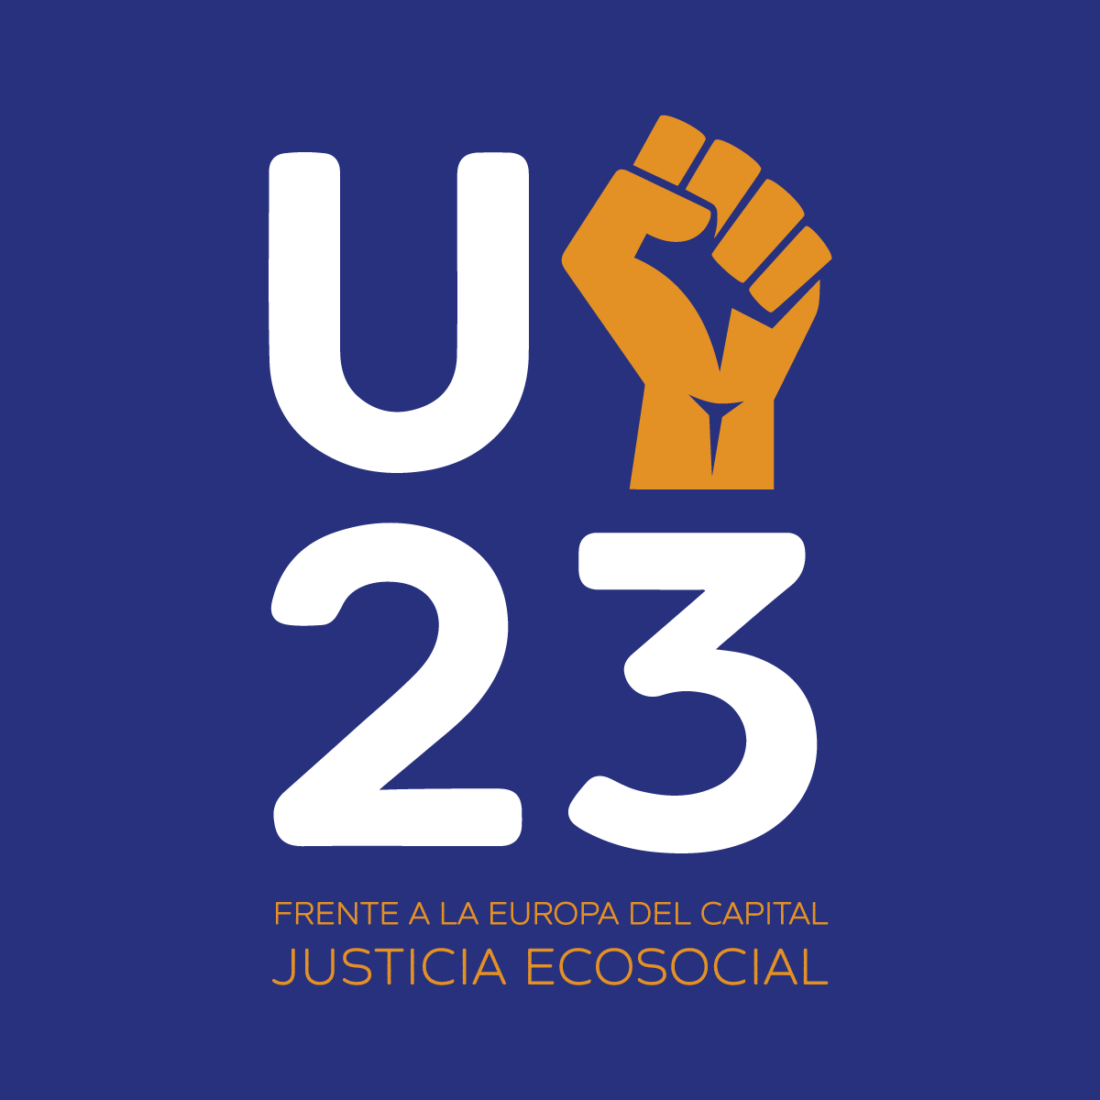 Agenda de movilización social para la Presidencia española de la UE: “Frente a la Europa del capital, justicia ecosocial”